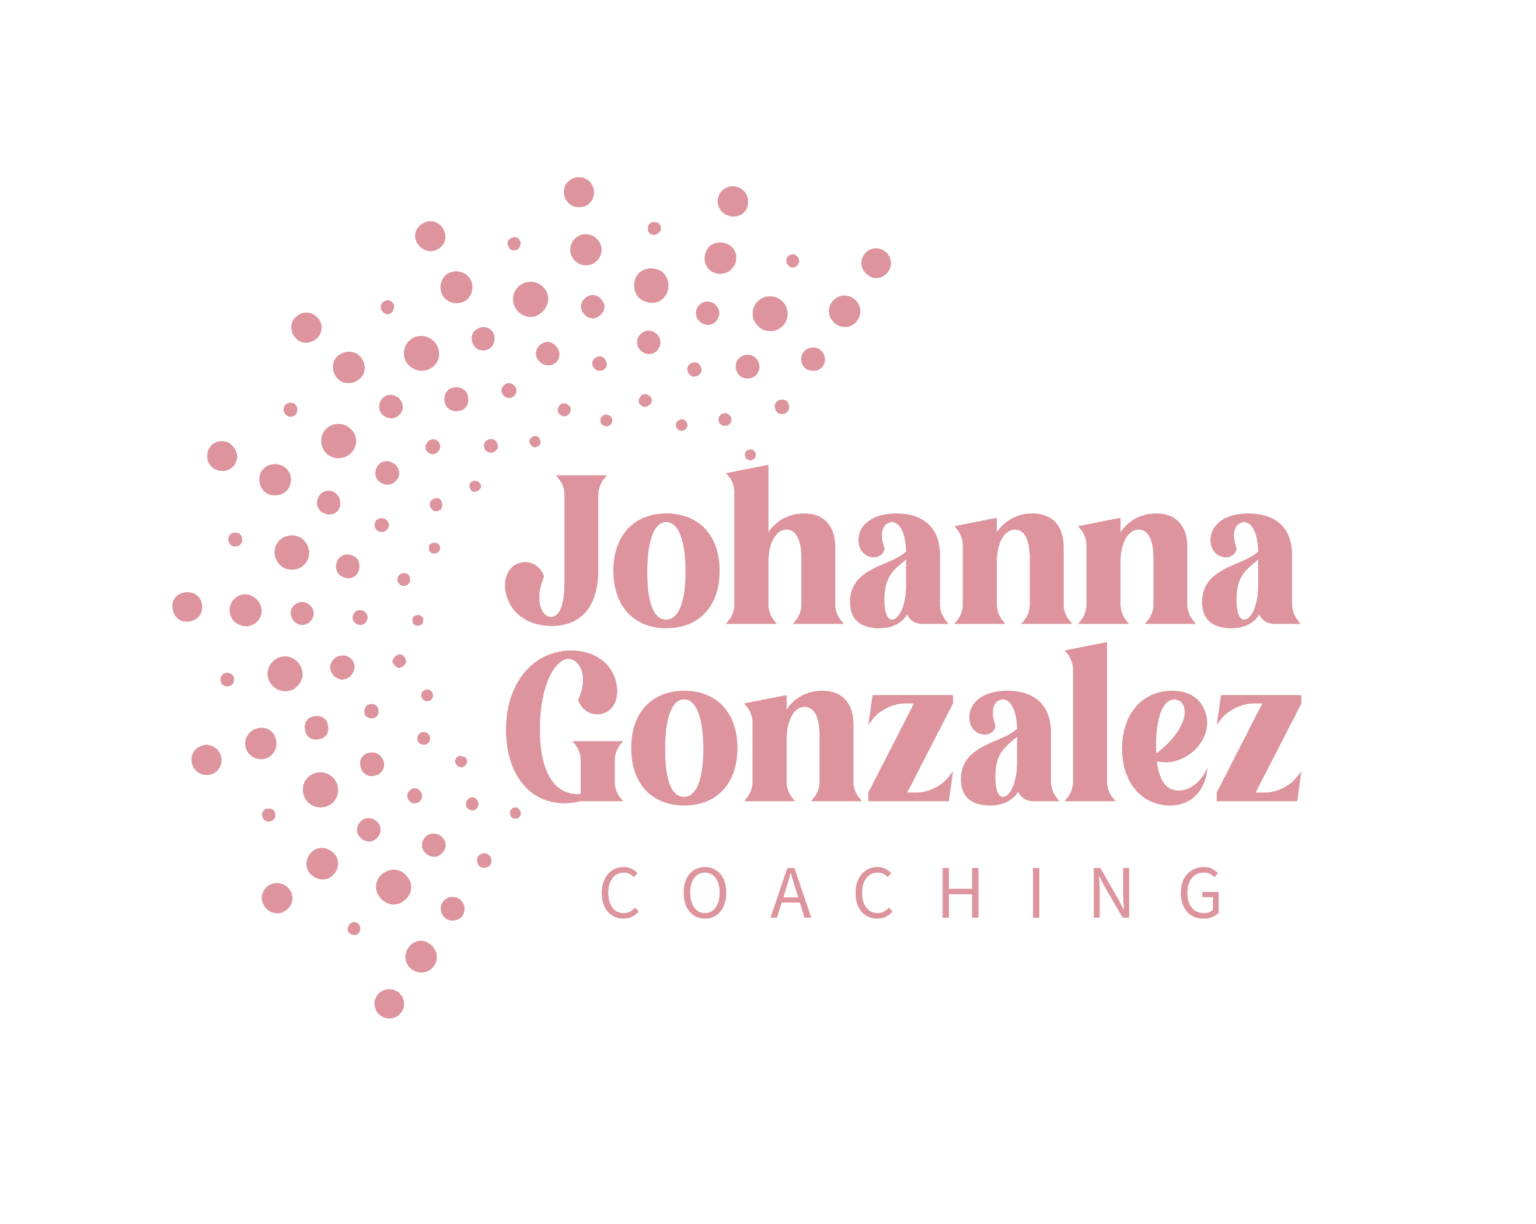 Johanna Gonzalez Coaching - Zestful Media & Design